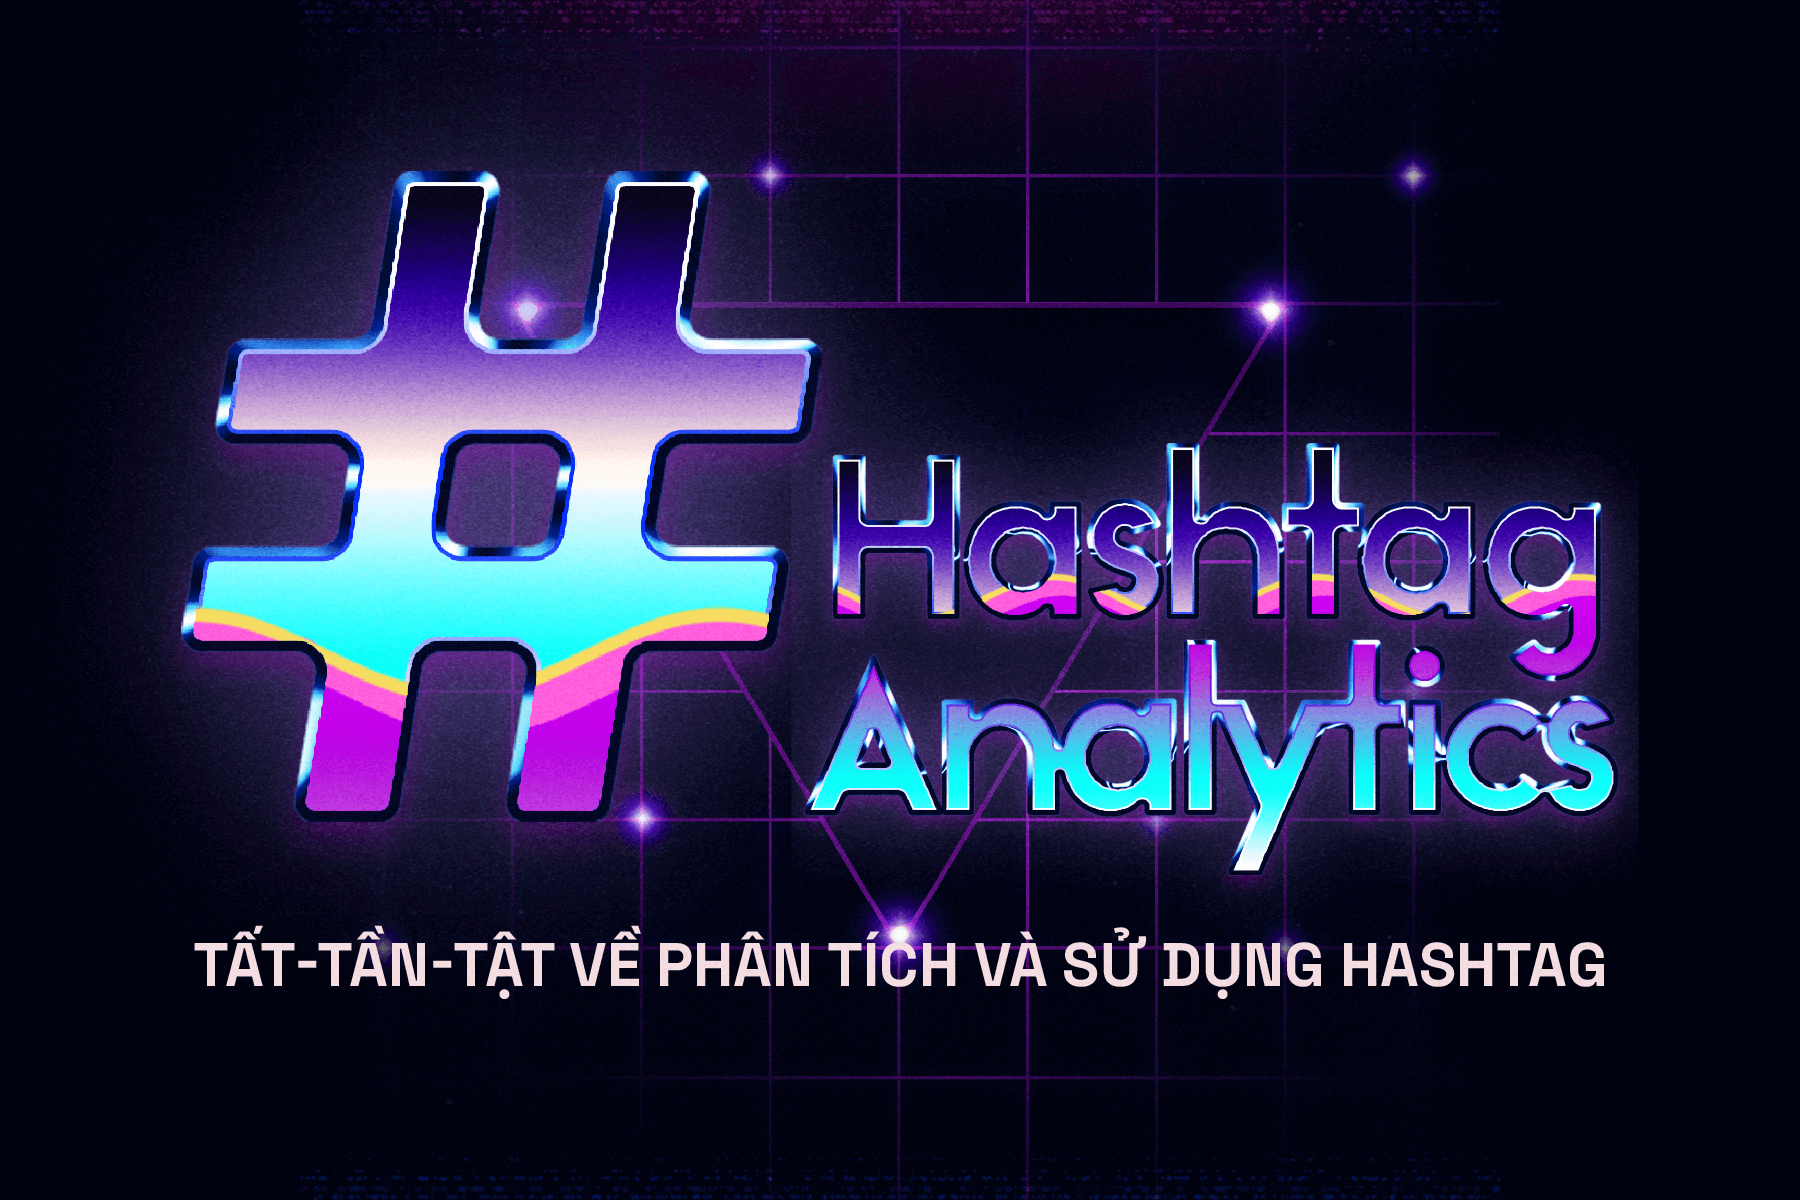 Hashtag Analytics: Tất-tần-tật về phân tích và sử dụng hashtag